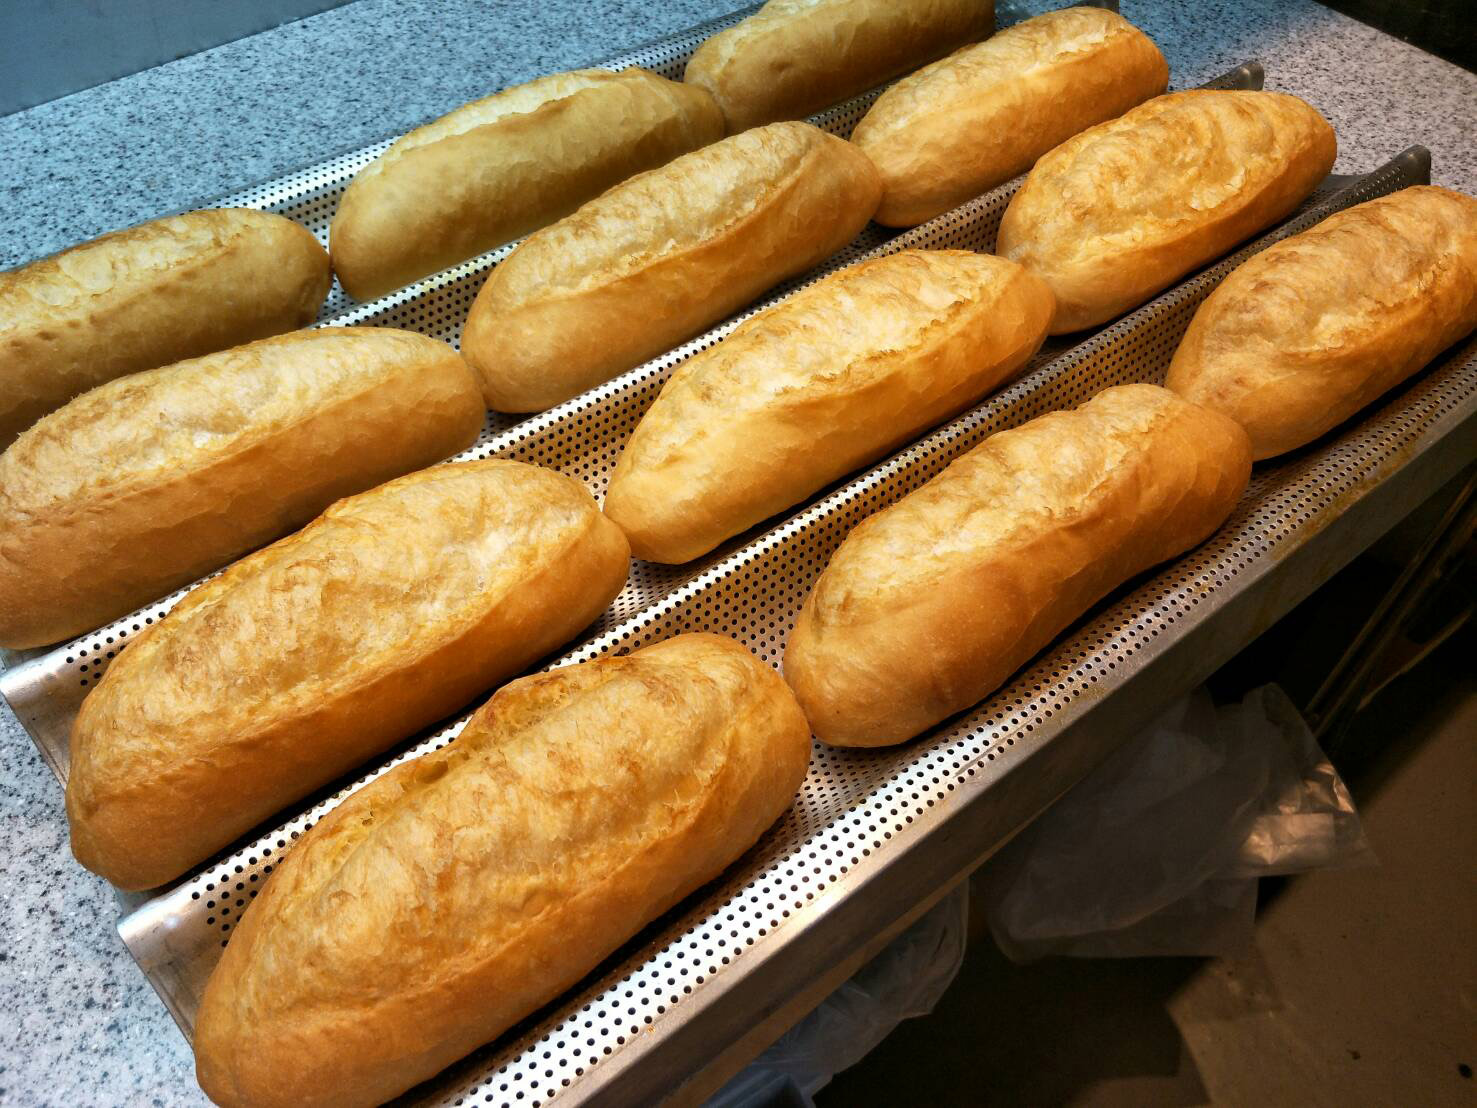 ベトナムのパン「バインミー」は、外はカリカリで見た目はフランスパンに似ていますが、中はフワフワ